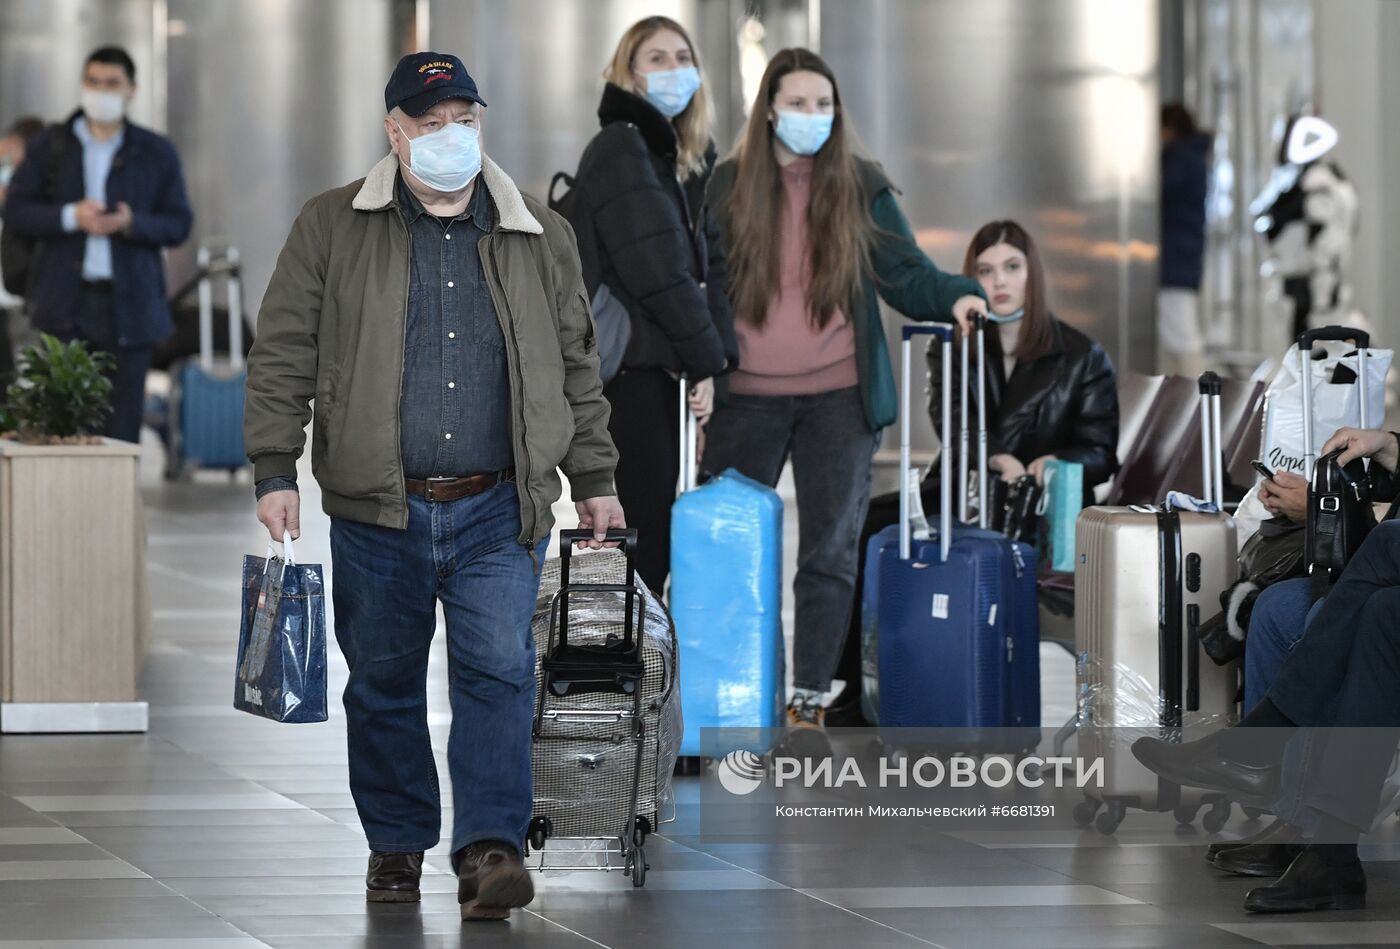 Работа аэропорта в Симферополе на фоне коронавирусных ограничений в Крыму